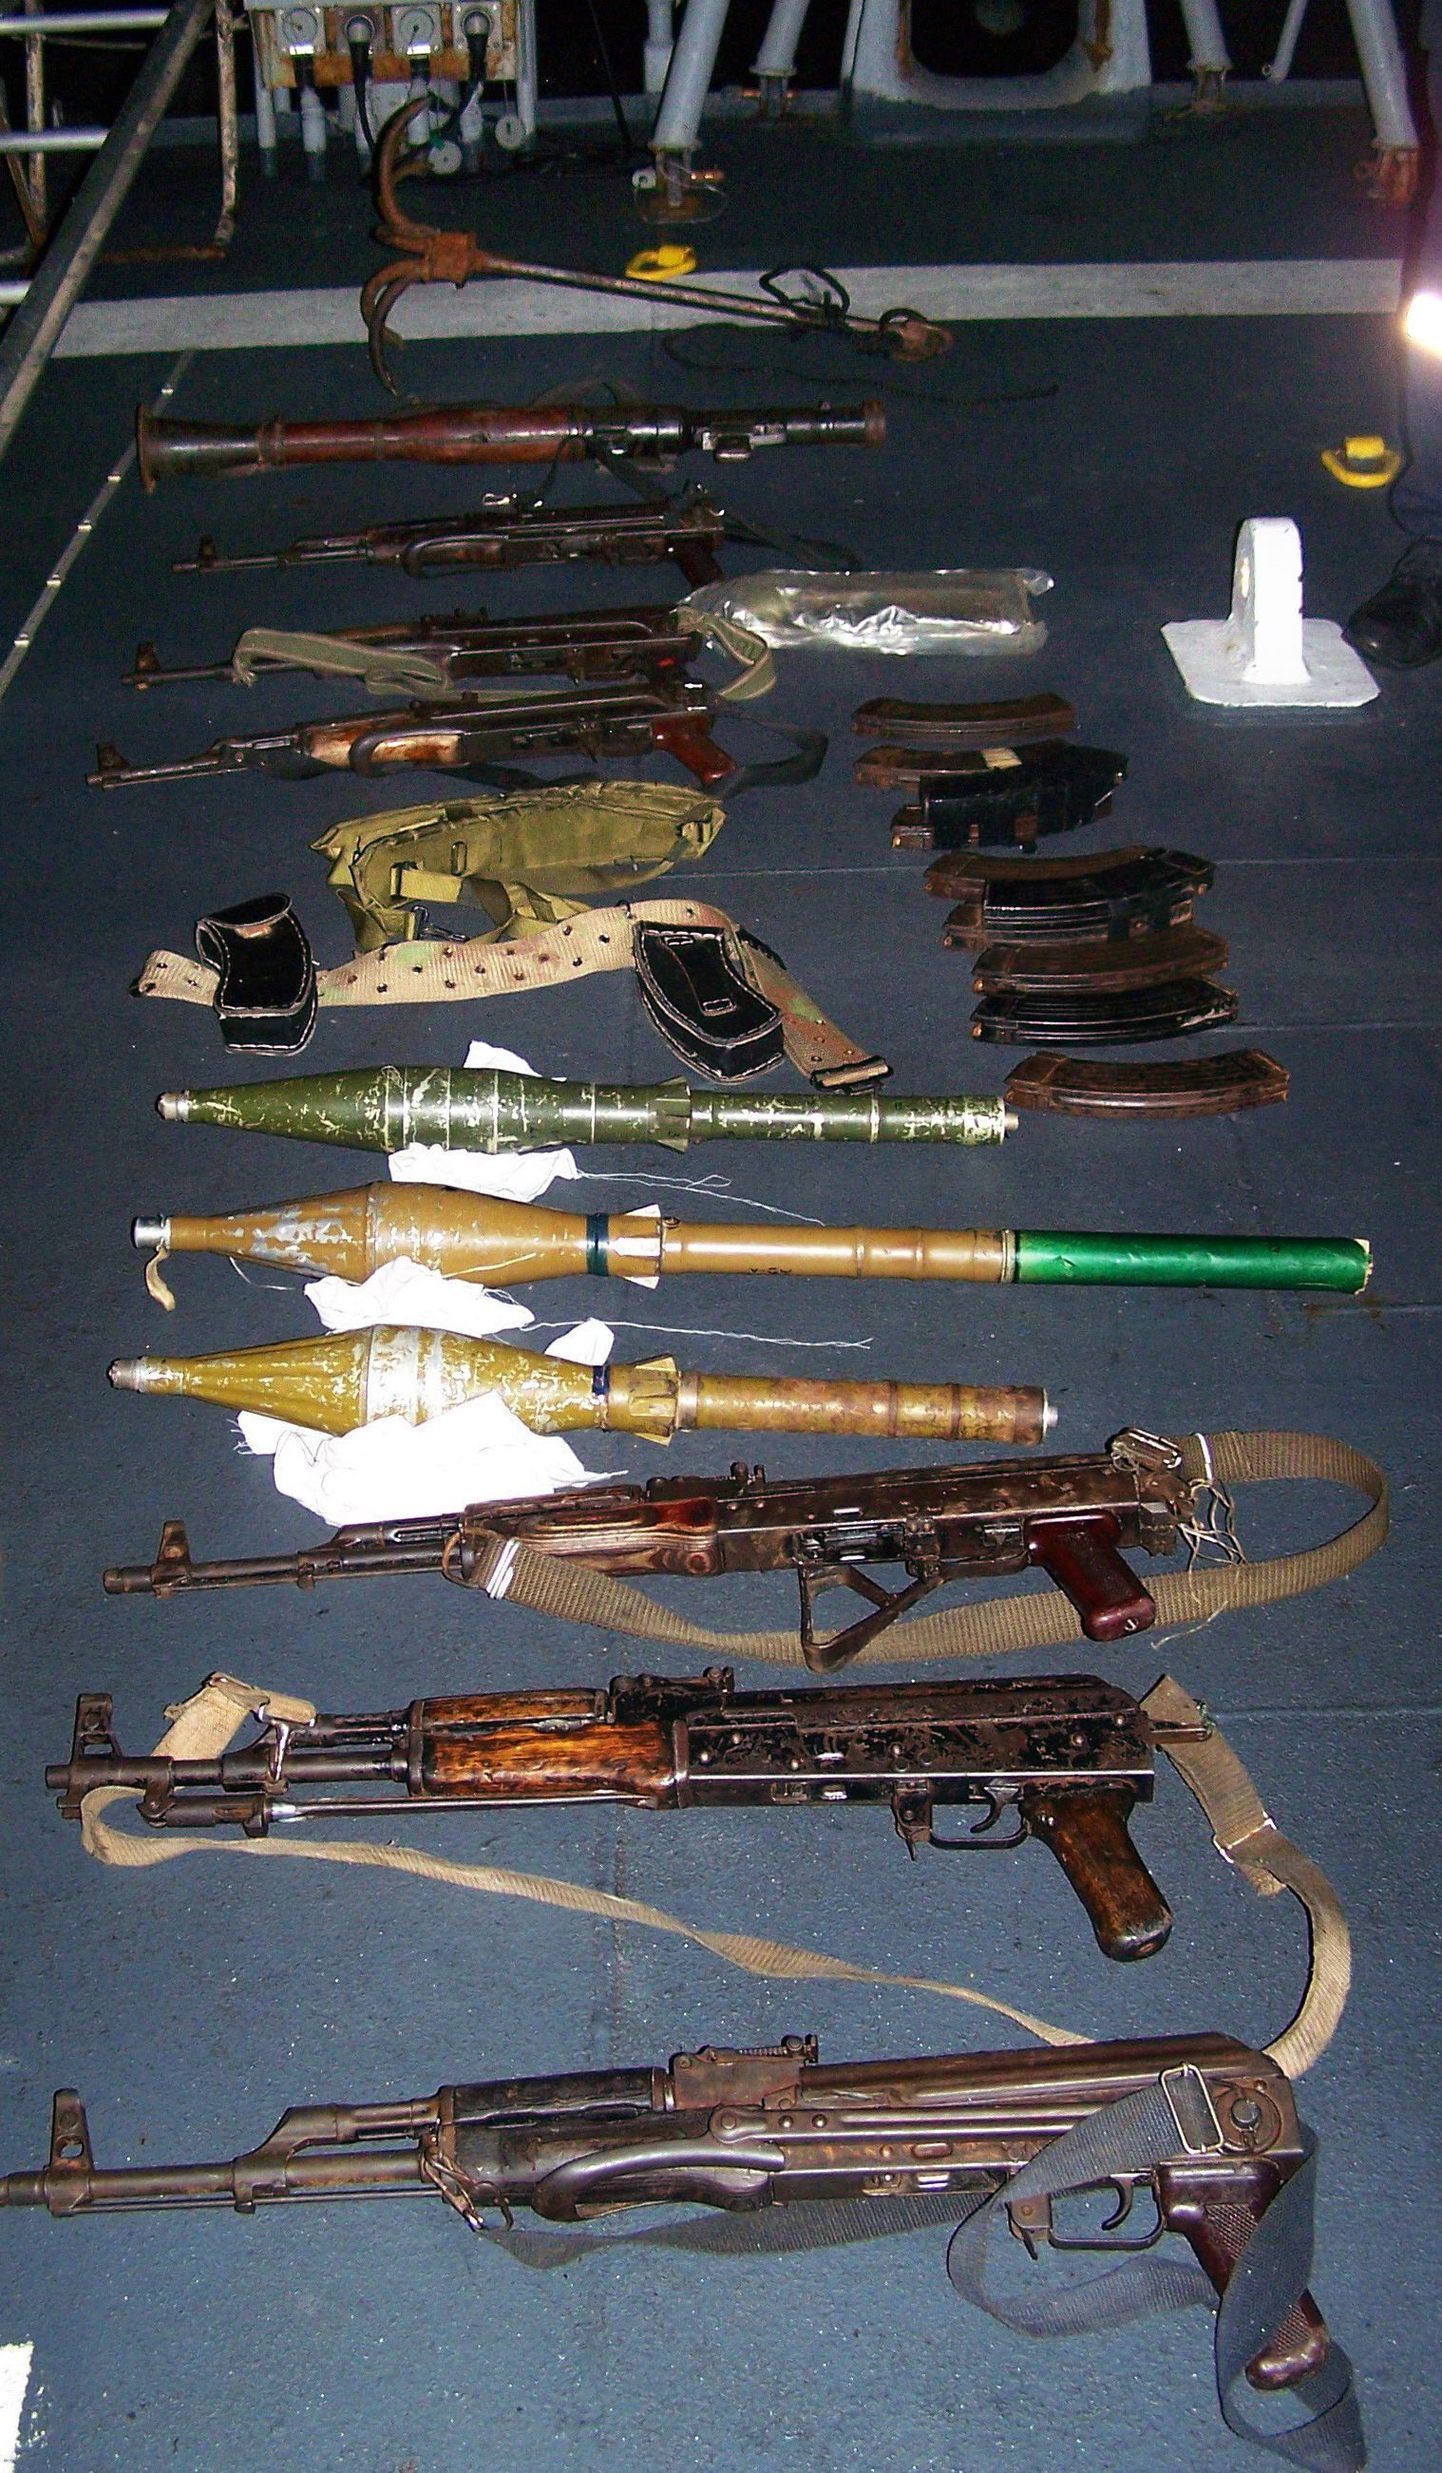 Prantsuse mereväe poolt somaallastelt konfiskerritud relvad.